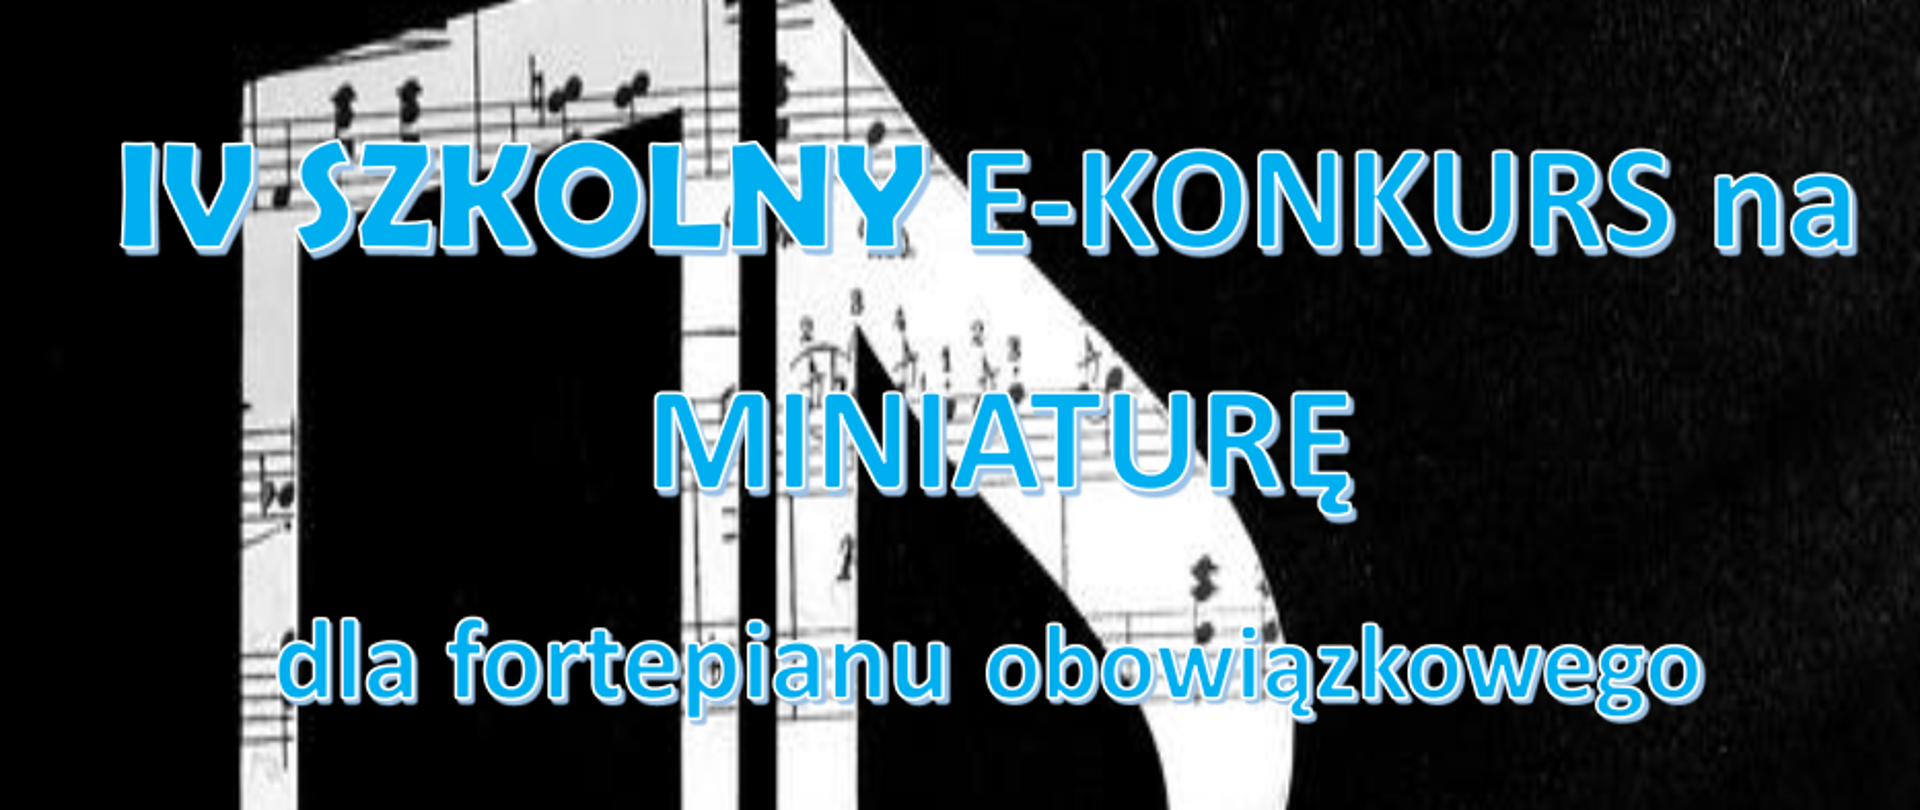 Grafika, czarne tło, jasne nuty w tle, tekst: IV Szkolny e-Konkurs na Miniaturę dla fortepianu obowiązkowego, głosujemy lajkami od 27 do 31 majado godz. 12:00 na fanpage'u POSM PIANO FAN CLUB, serdecznie zapraszamy do udziału, Nagrania wysyłamy od 24 do 26 maja, e-mail: orczyk@szkolamuzyczna.os.pl